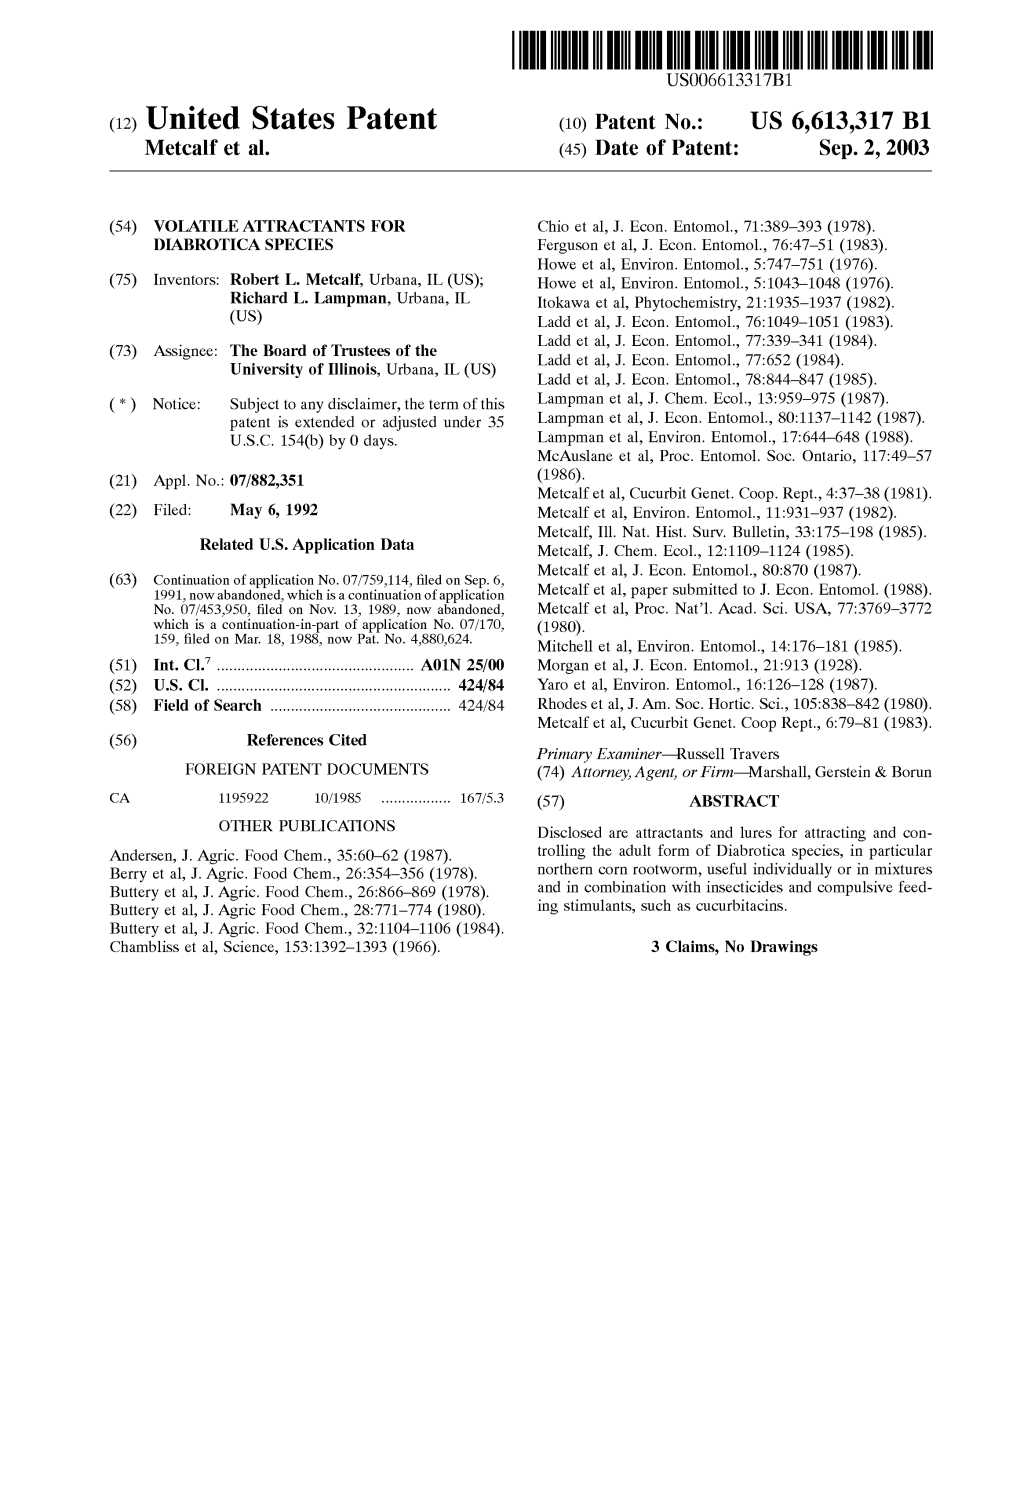 (12) United States Patent (10) Patent No.: US 6,613,317 B1 Metcalf Et Al